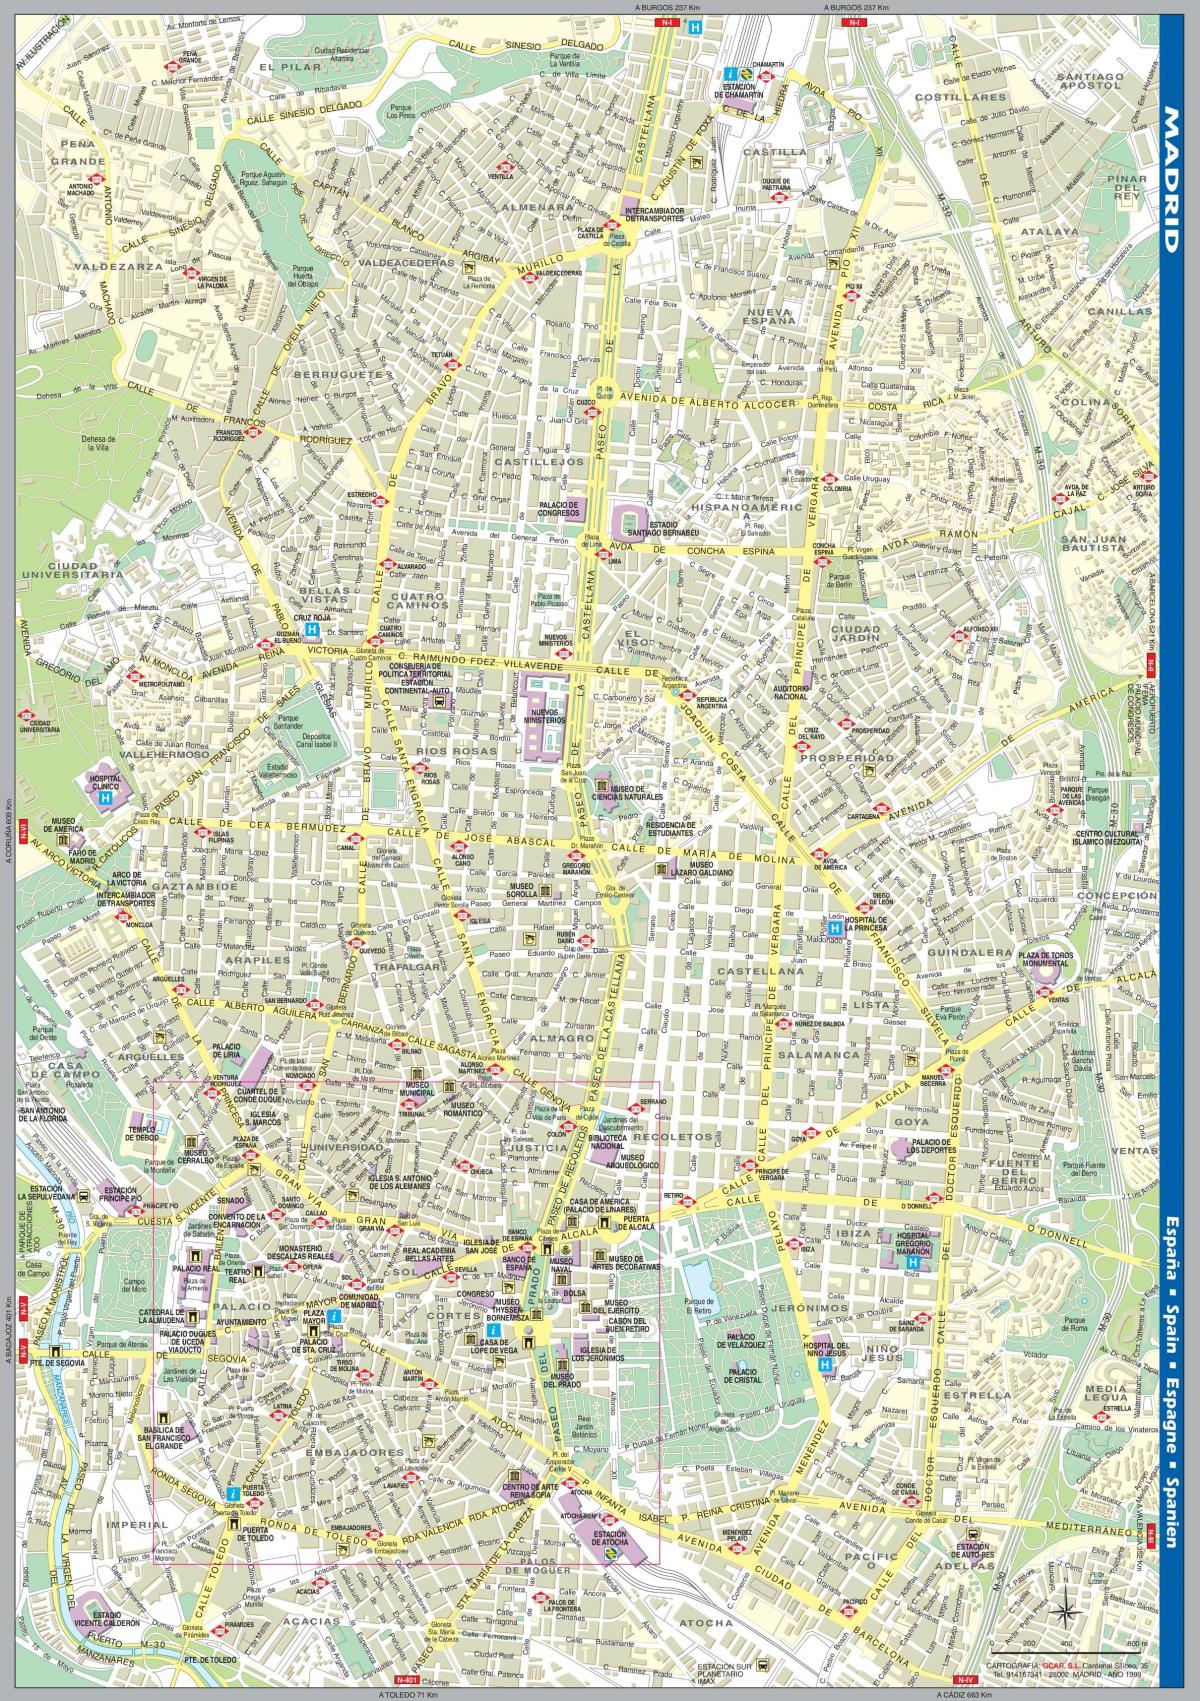 רחוב מפה של מדריד למרכז העיר